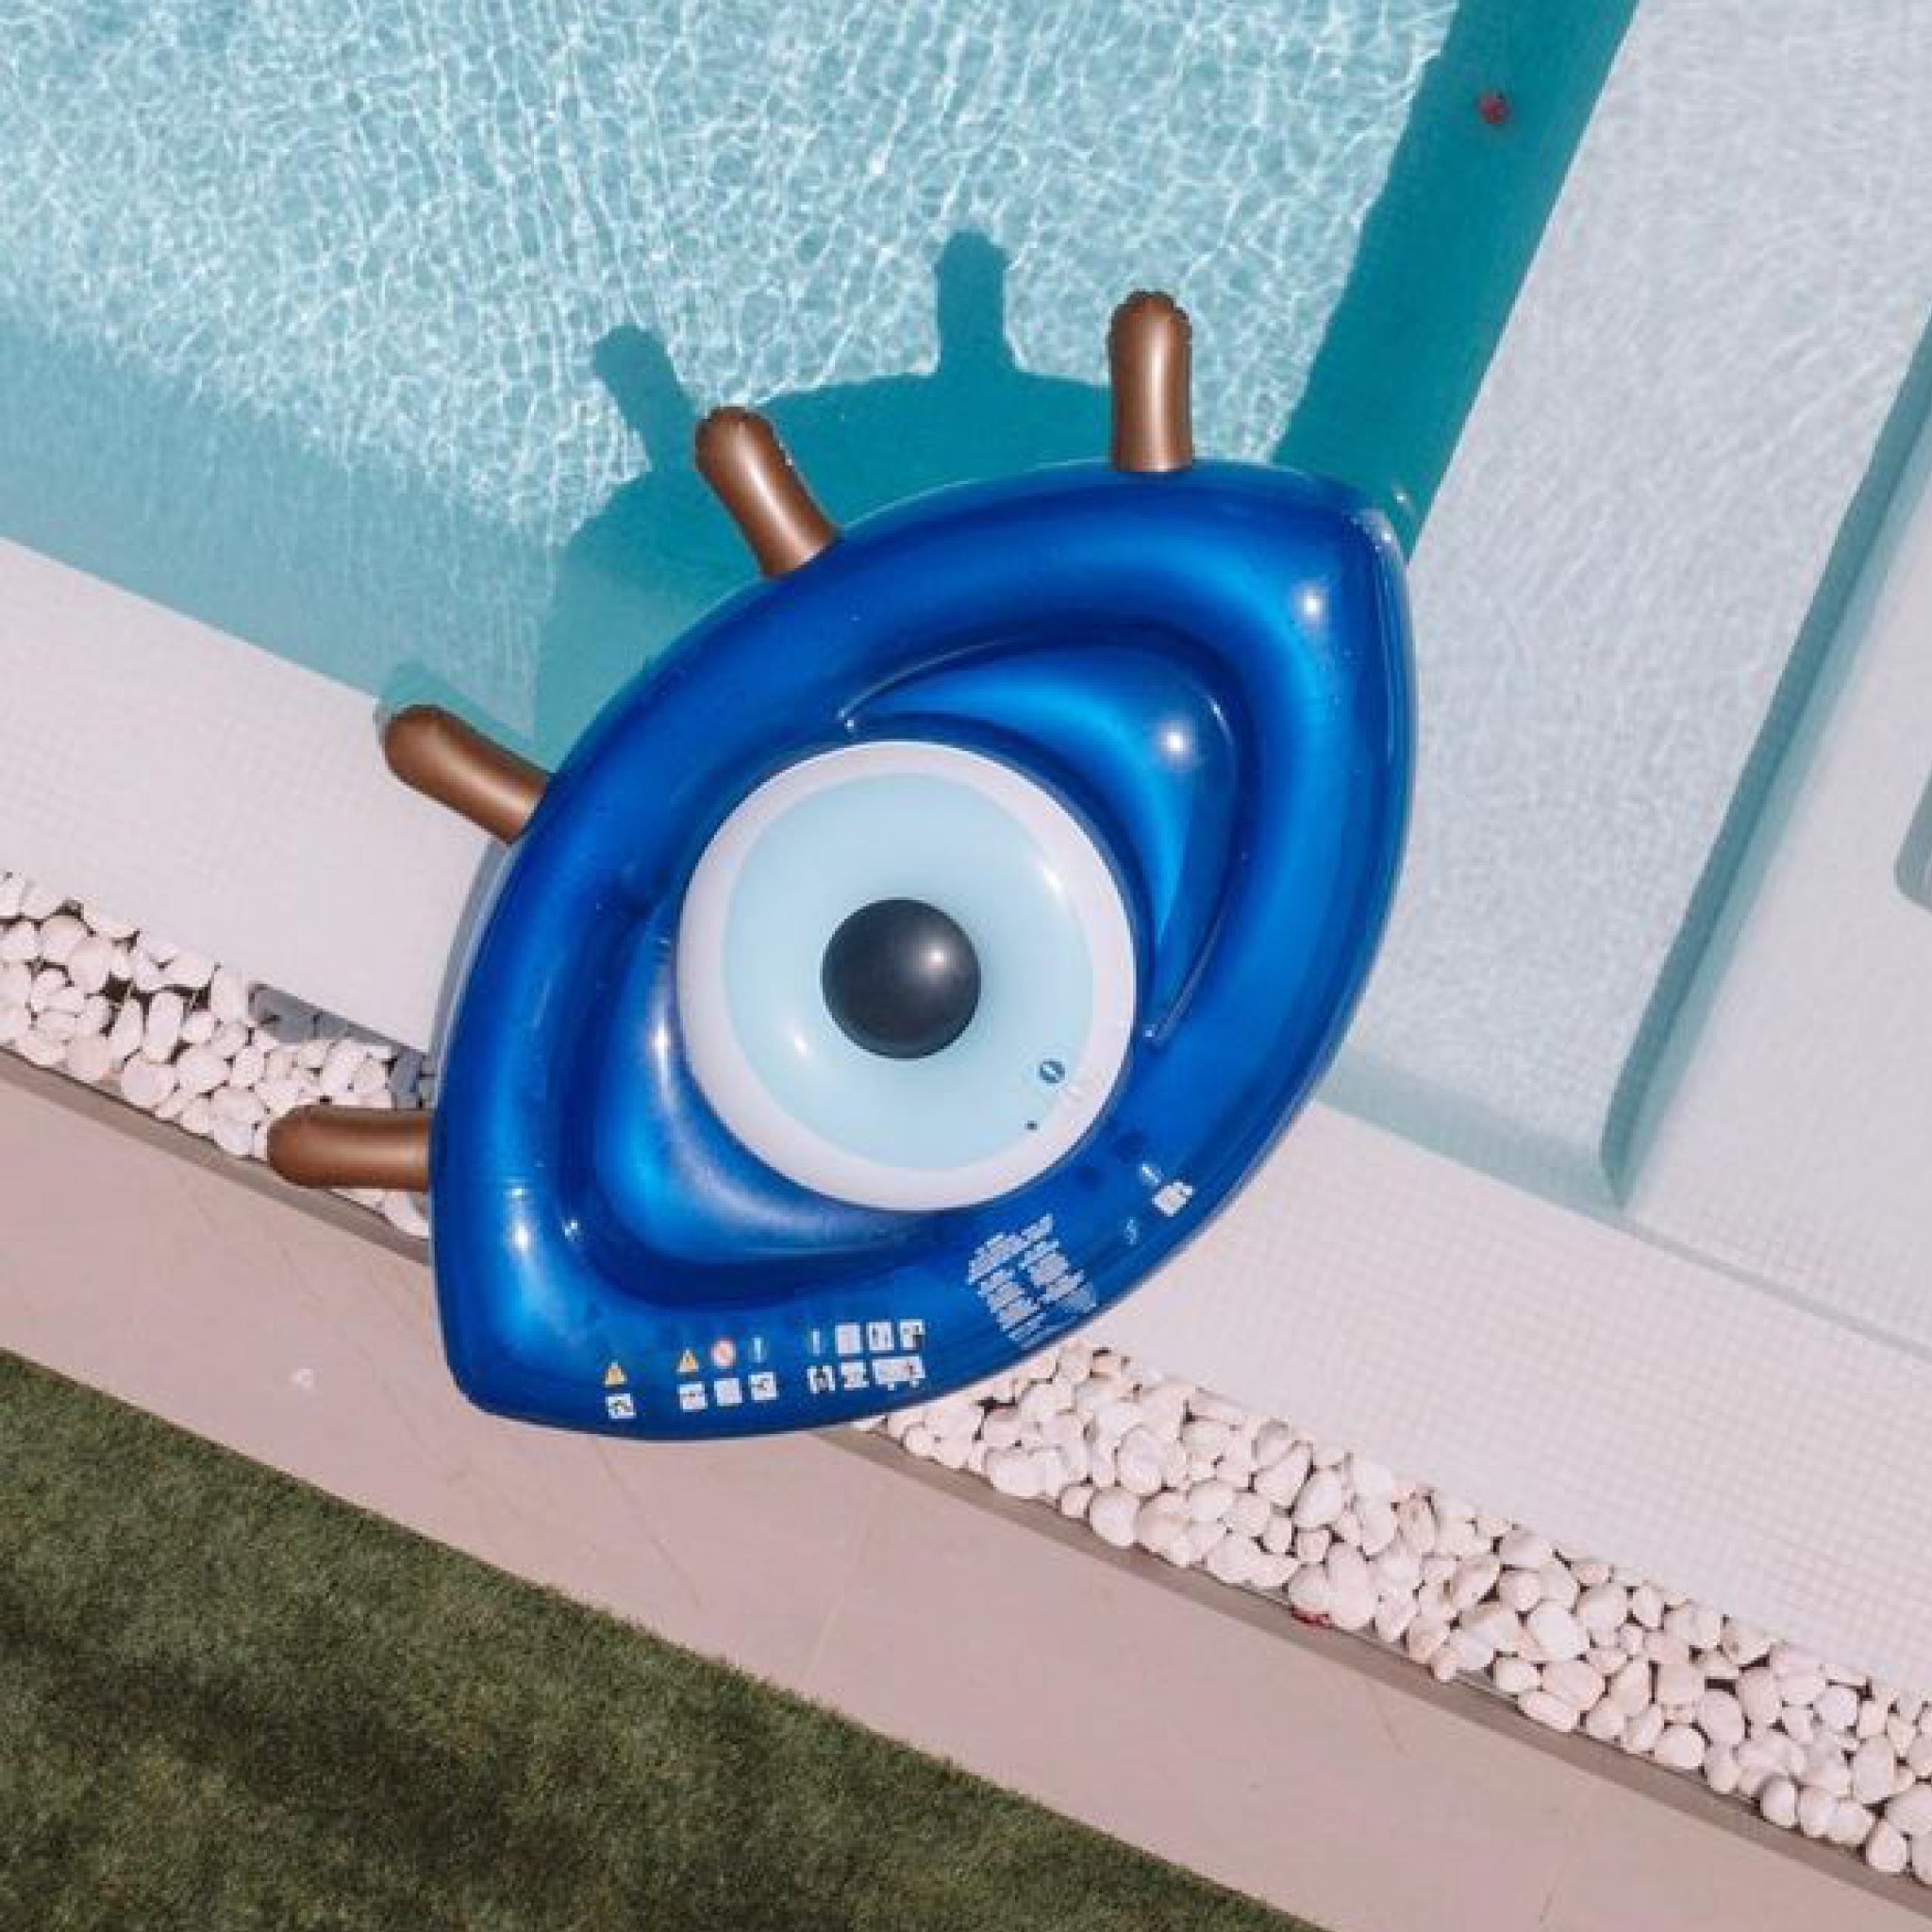 Luxe Lie-On Float | Greek Eye Blue